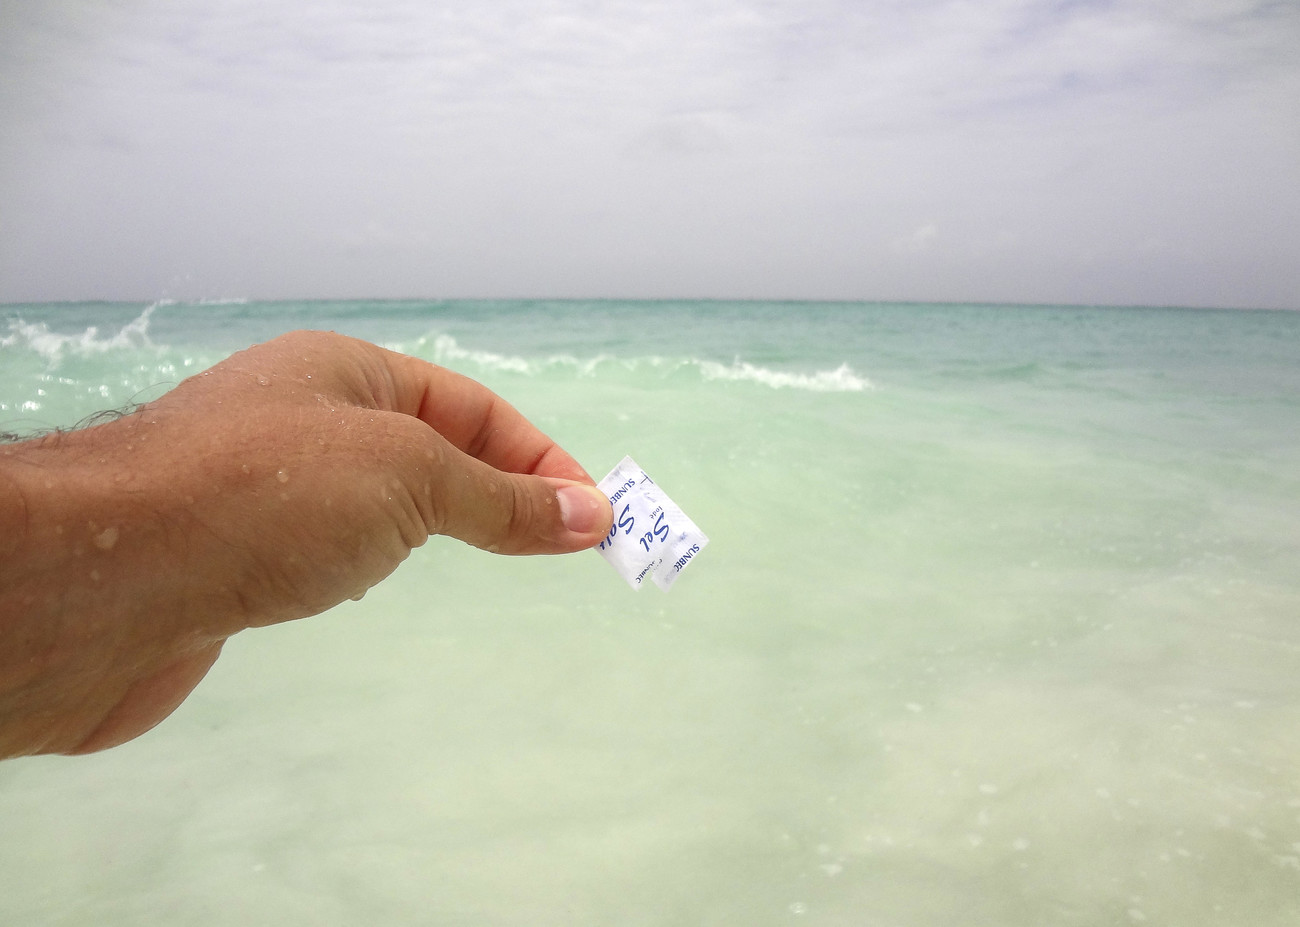 Steve Giasson. Performance invisible n&deg; 7 (Ajouter une pinc&eacute;e de sel dans la mer). Performeur : Daniel Roy. Cr&eacute;dit photographique : Daniel Roy. Cuba, mai 2015.